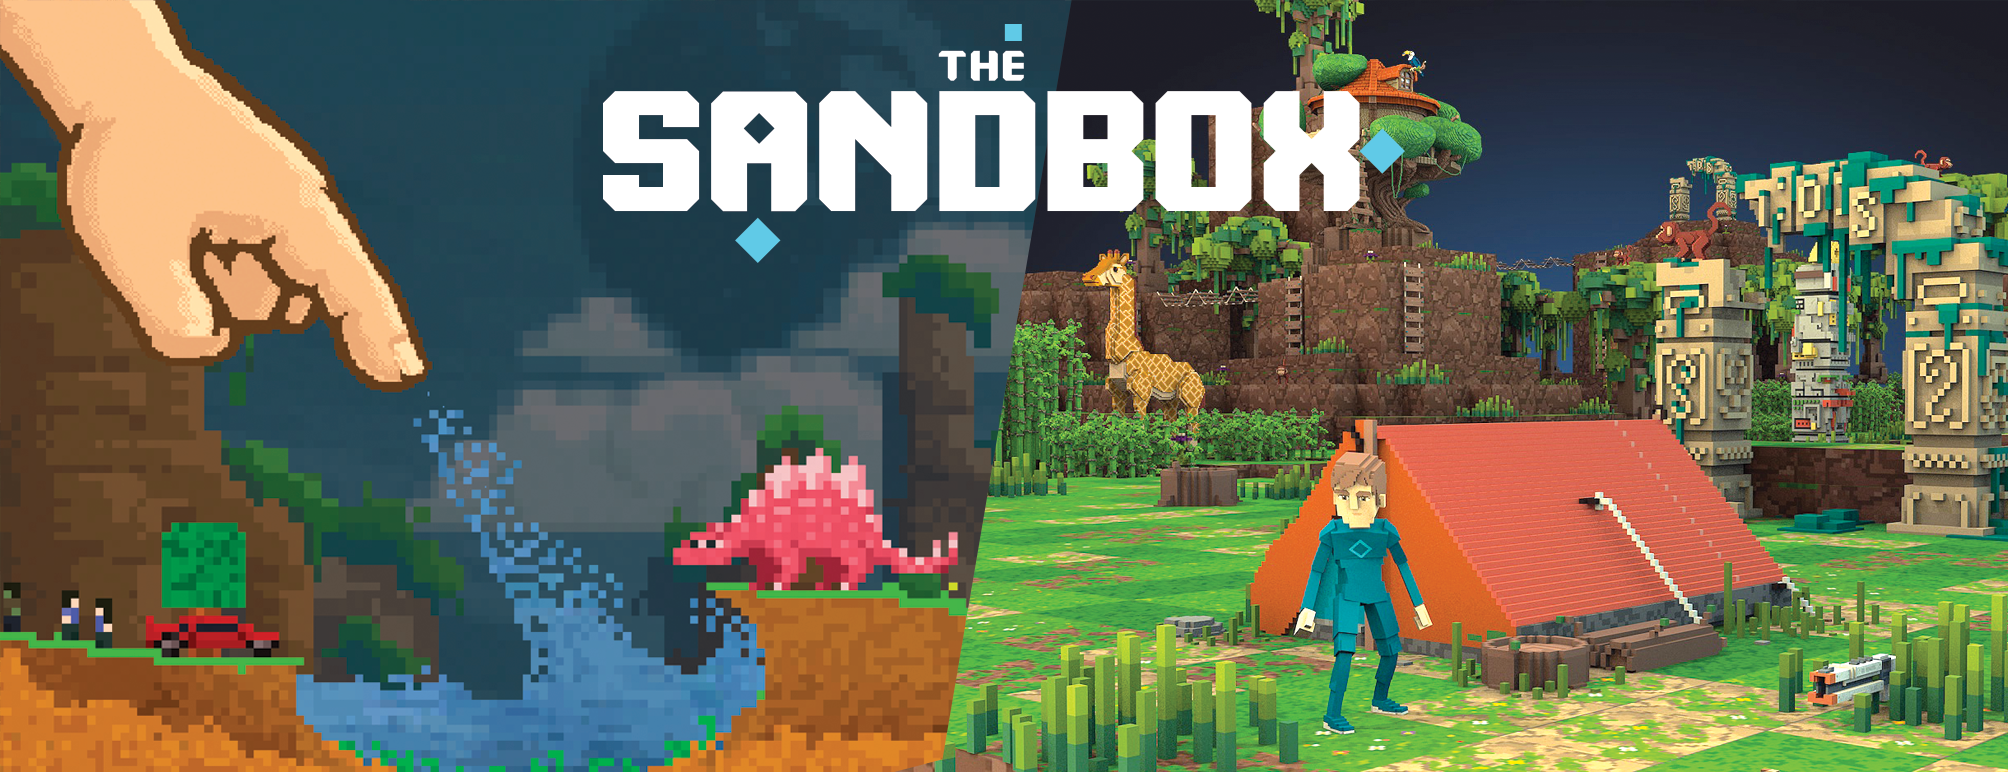 sandbox-game.png